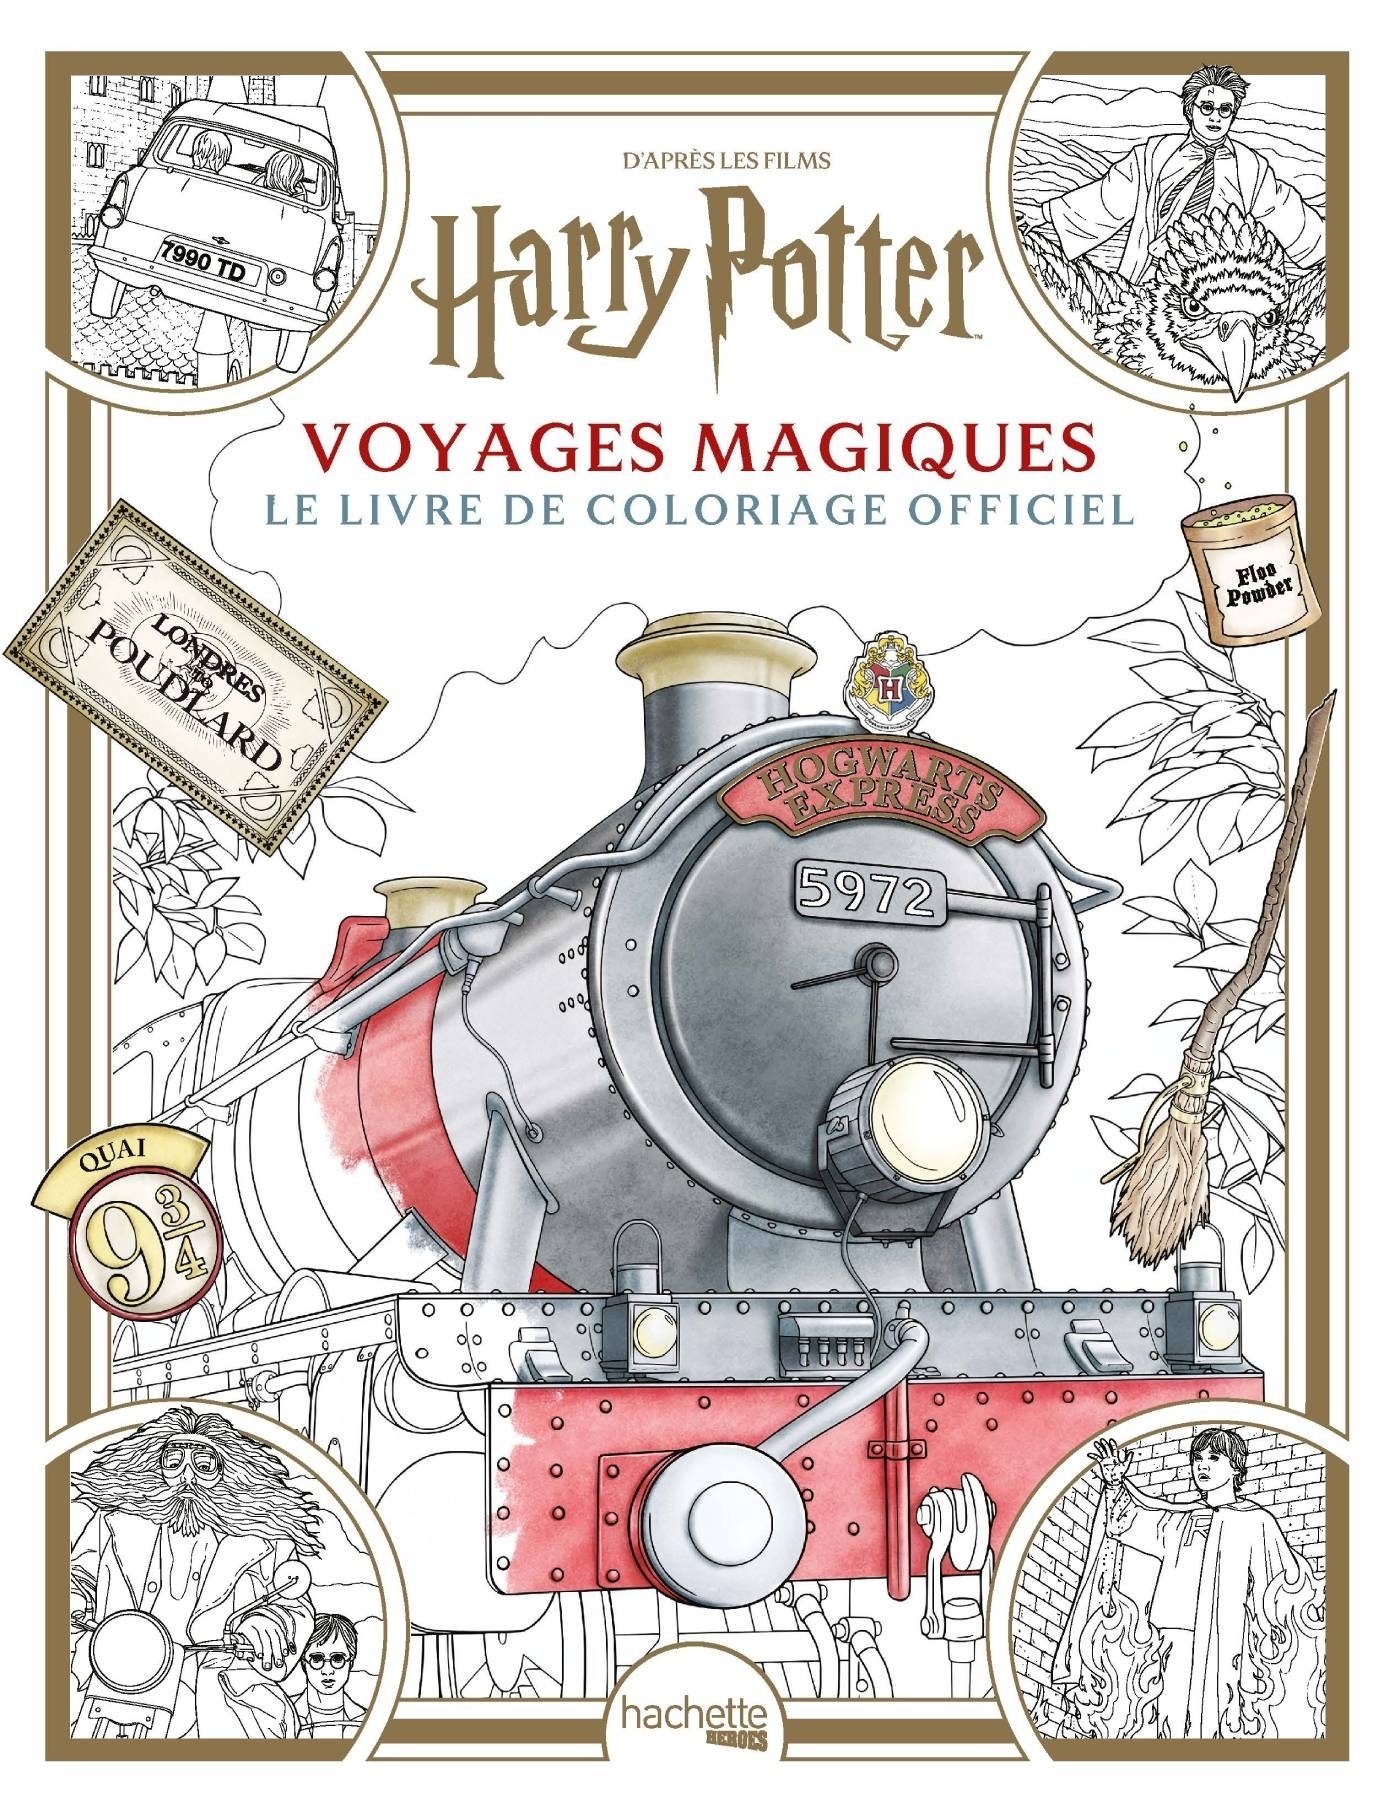 Harry Potter - le livre de coloriages : Collectif - 2012036961